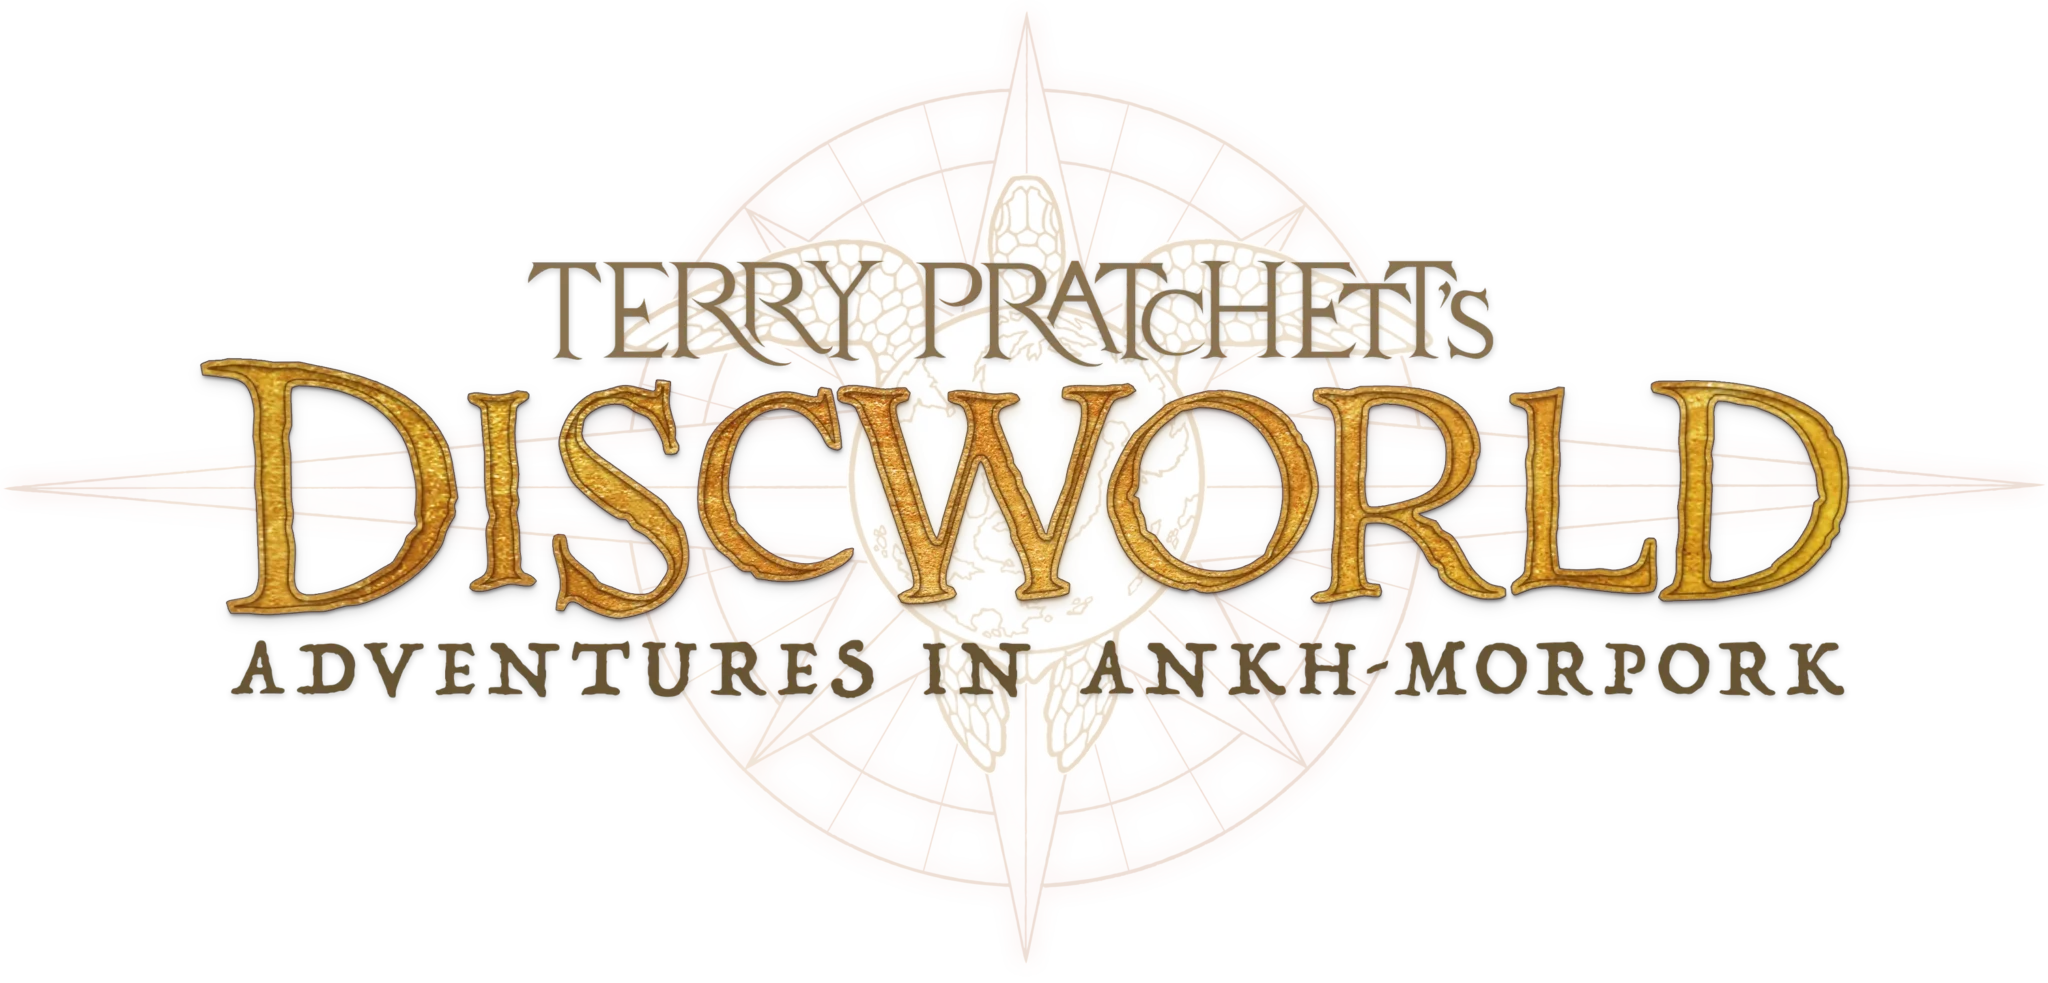 Discworld Adventures in Ankh-Morpork logo